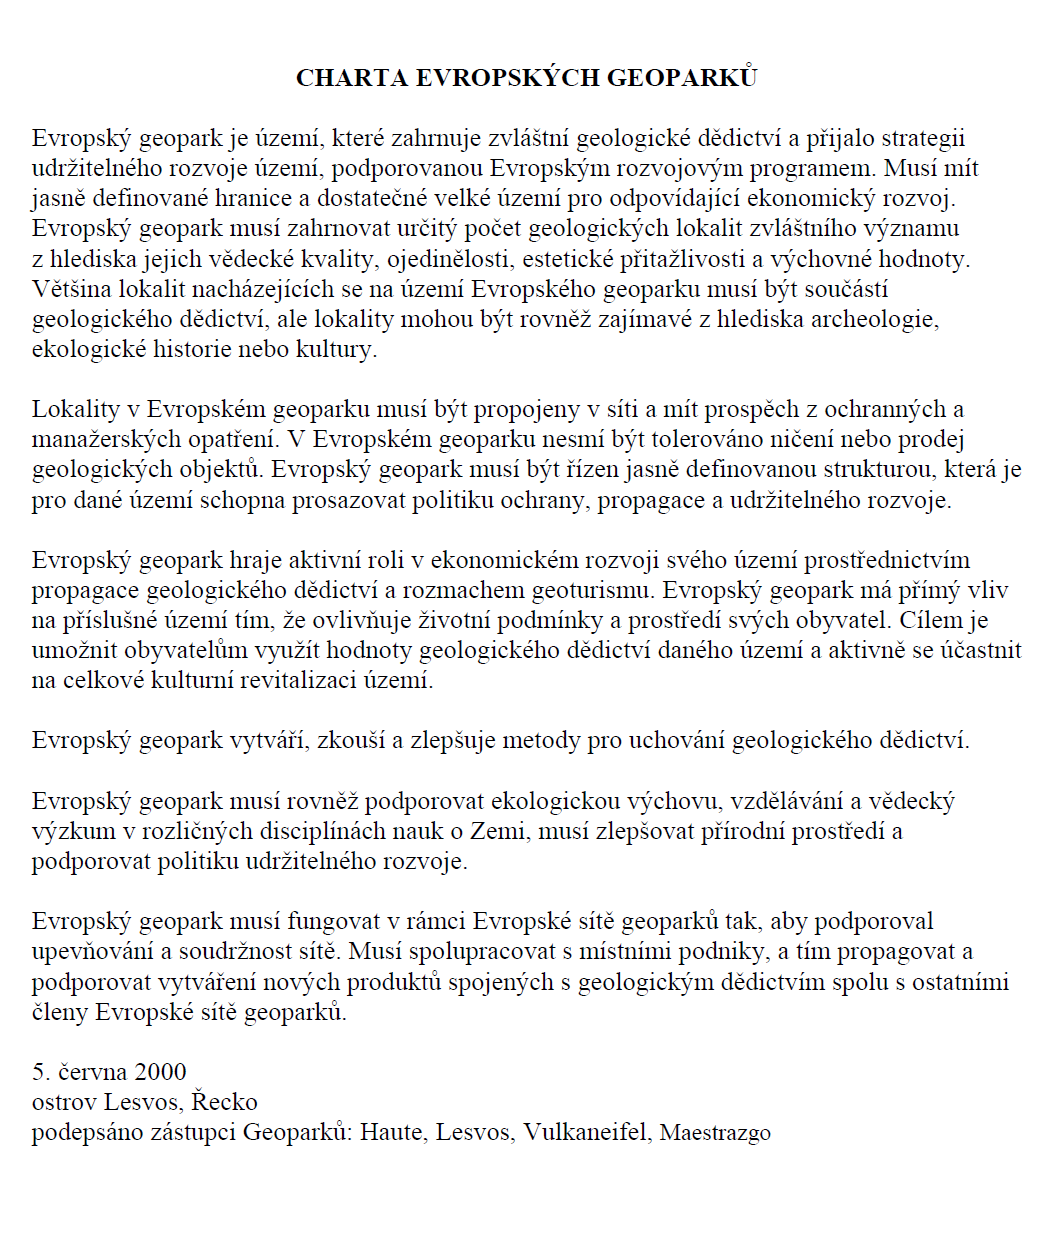 Návrh geoturistického produktu Geoparku Vysočina - PDF Free Download